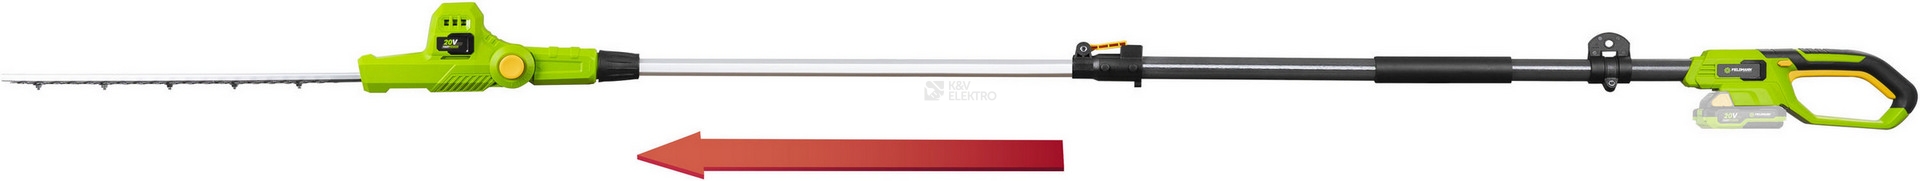 Obrázek produktu Aku teleskopické nůžky na živý plot Fieldmann FZN 70405-0 20V bez nabíječky a baterie 50004557 5